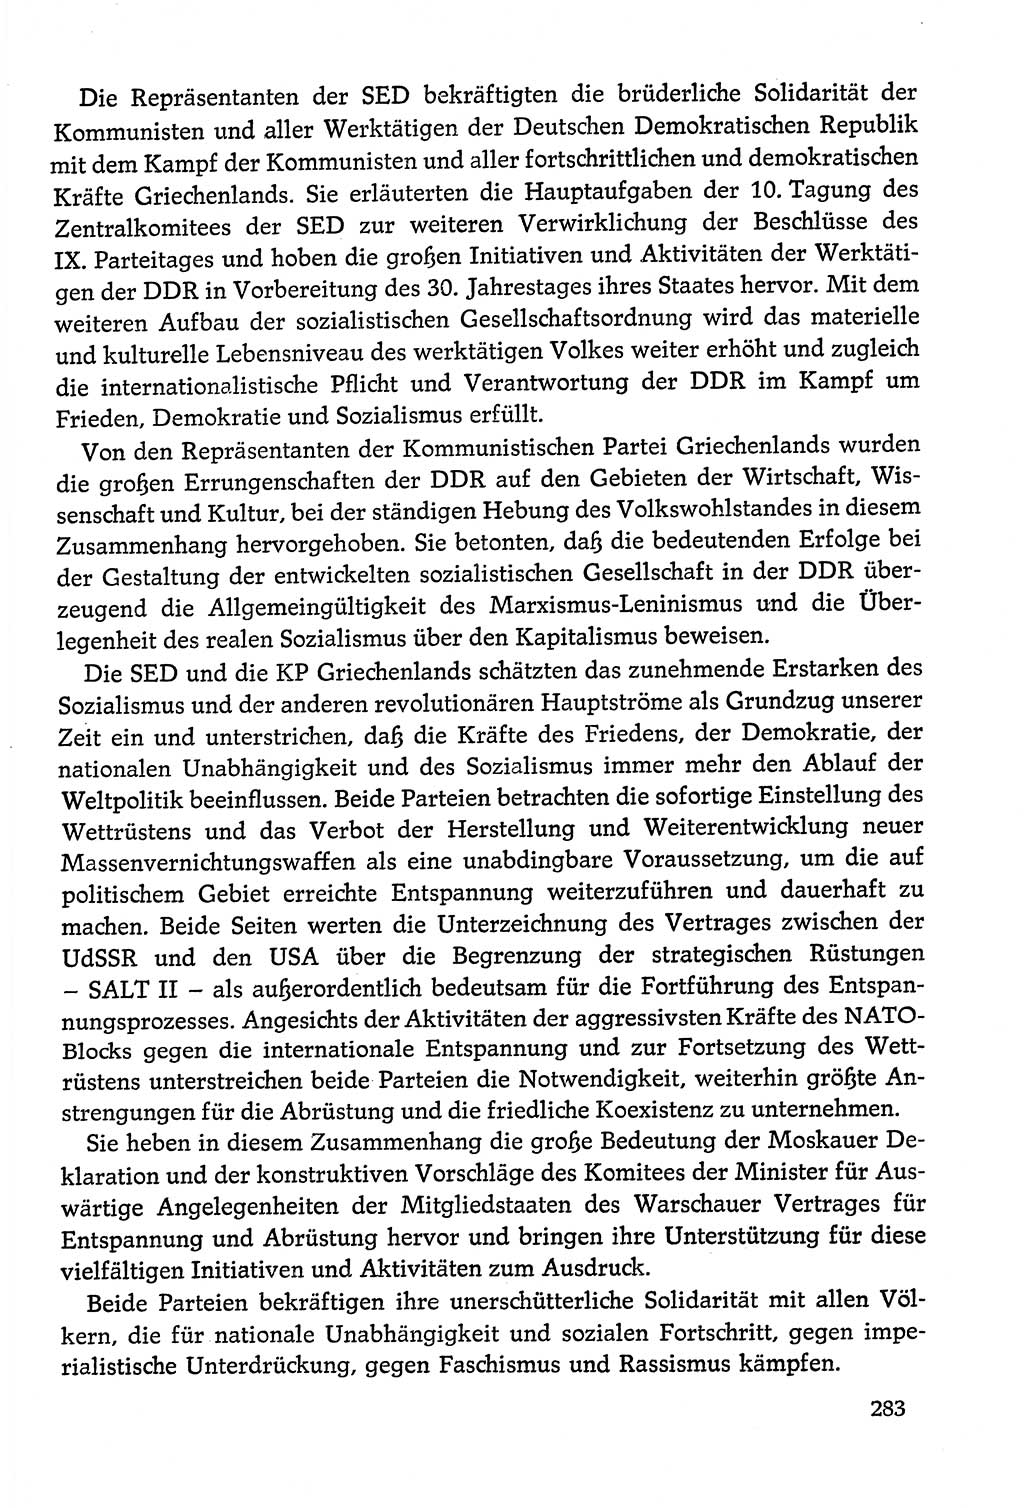 Dokumente der Sozialistischen Einheitspartei Deutschlands (SED) [Deutsche Demokratische Republik (DDR)] 1978-1979, Seite 283 (Dok. SED DDR 1978-1979, S. 283)